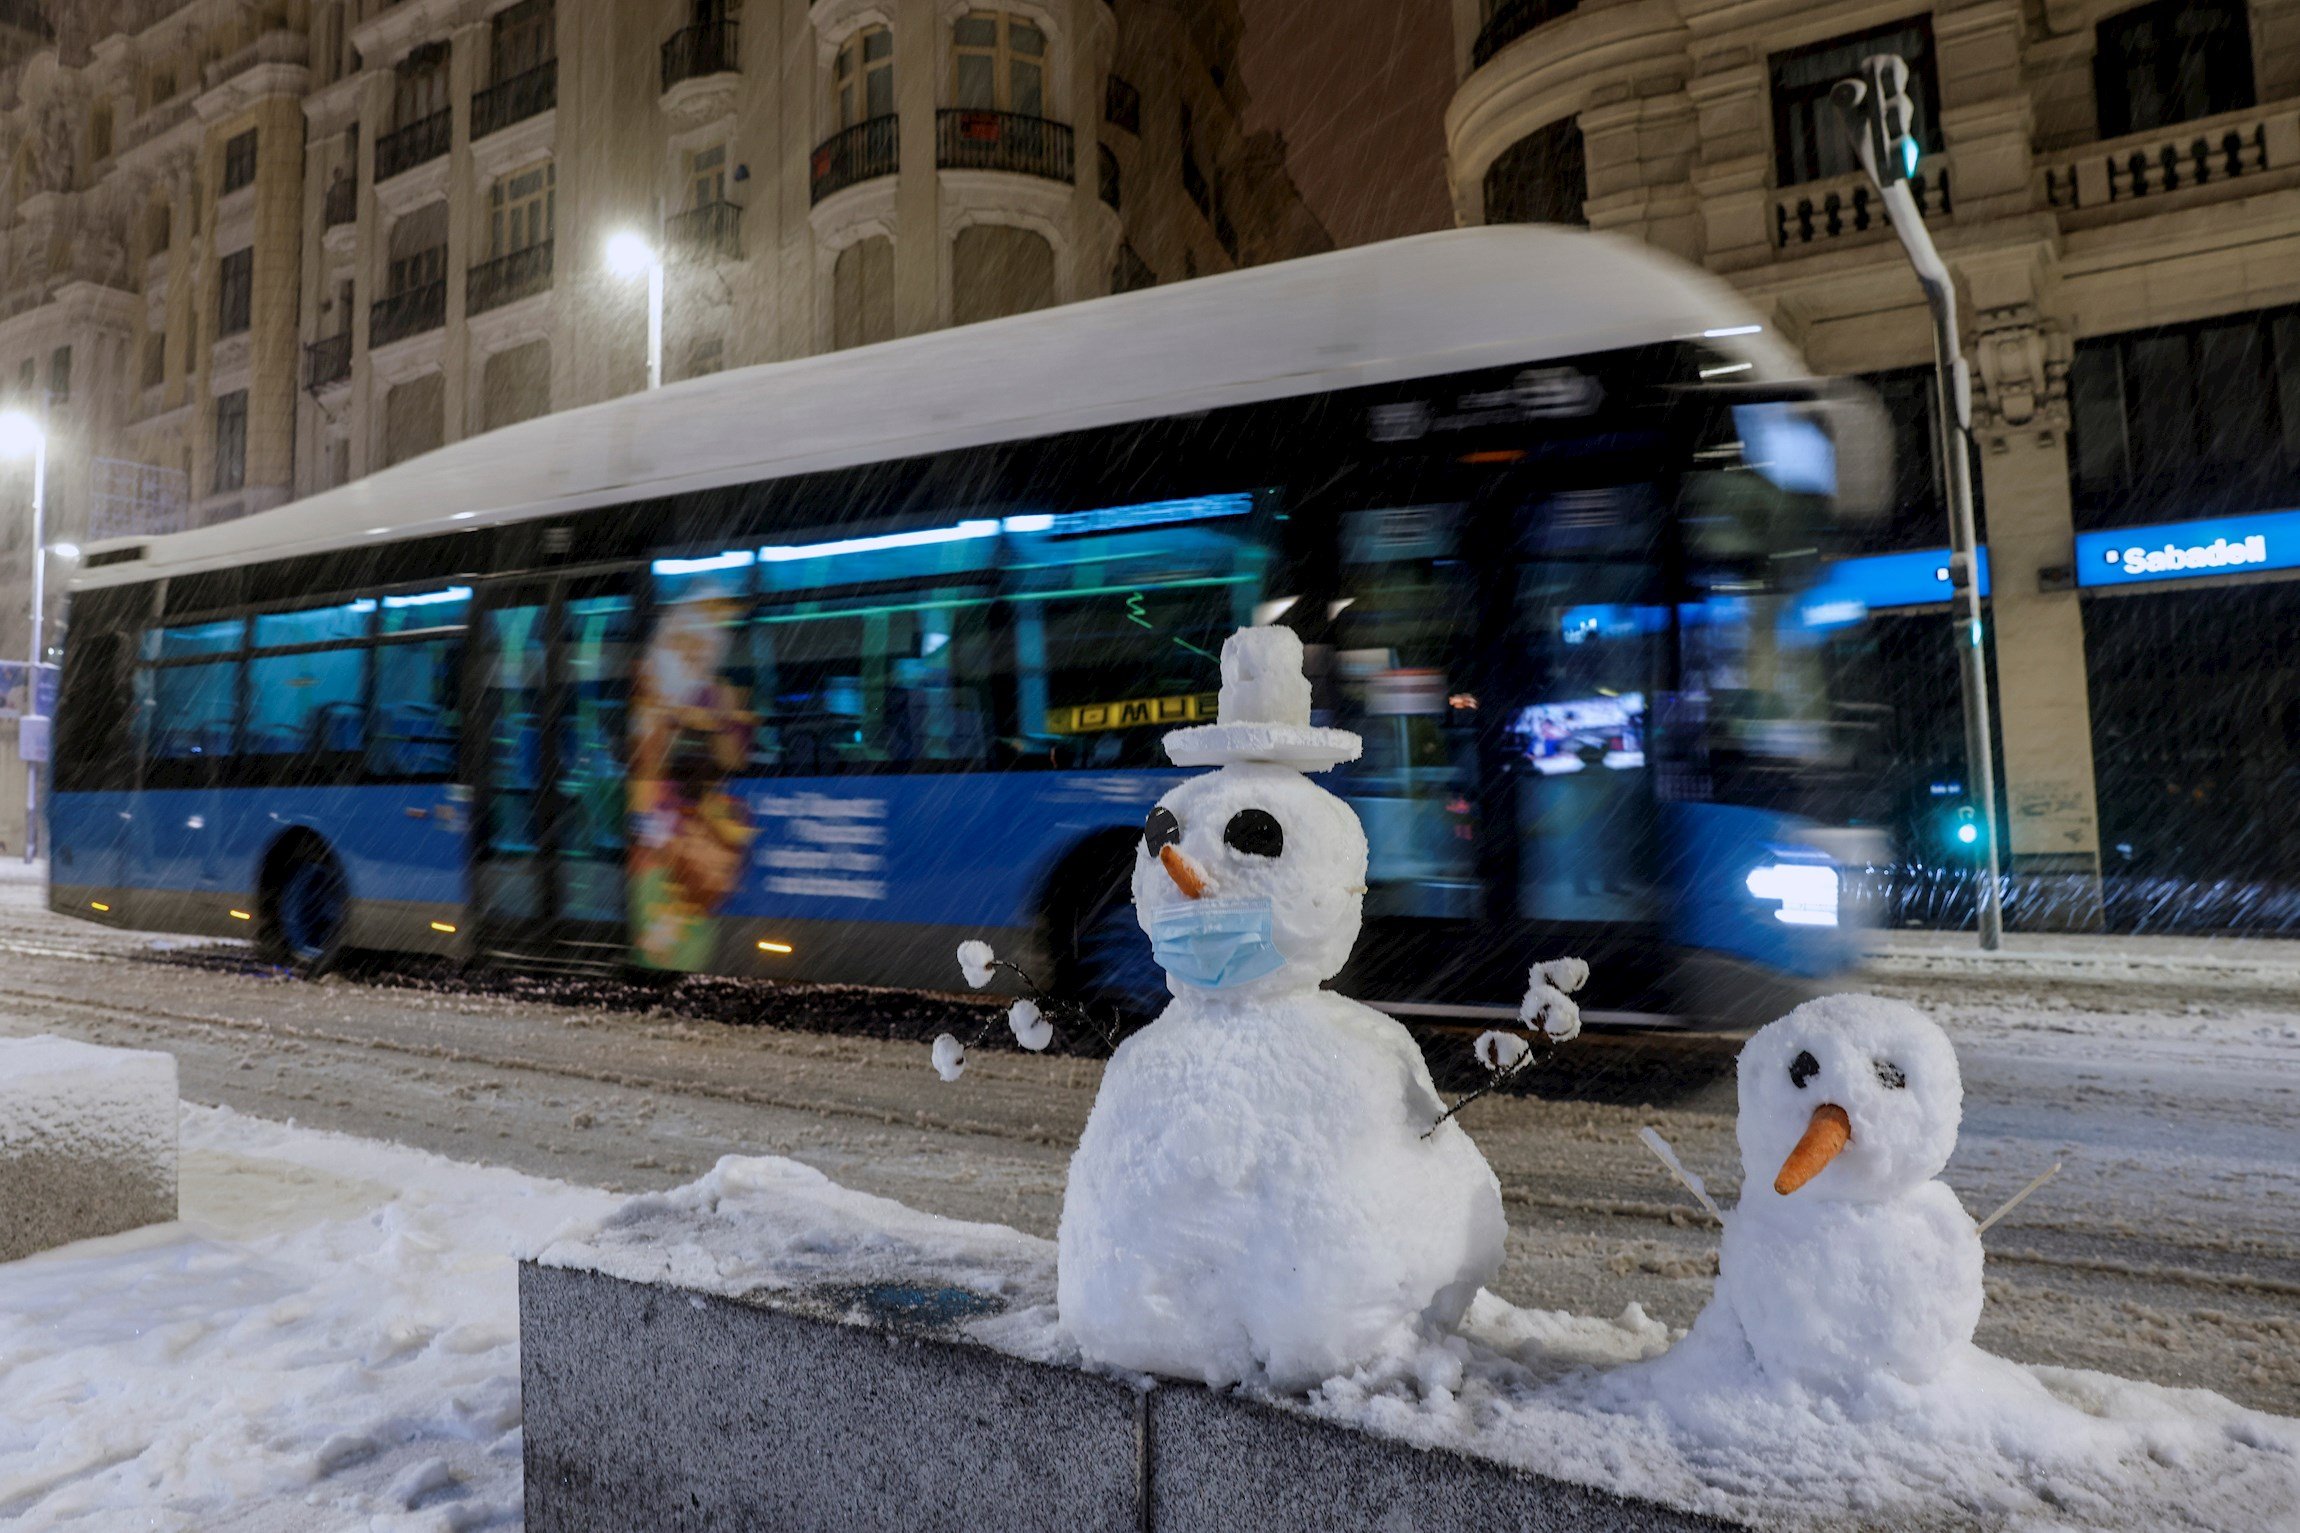 Portades filomèniques: Madrid monopolitza la nevada